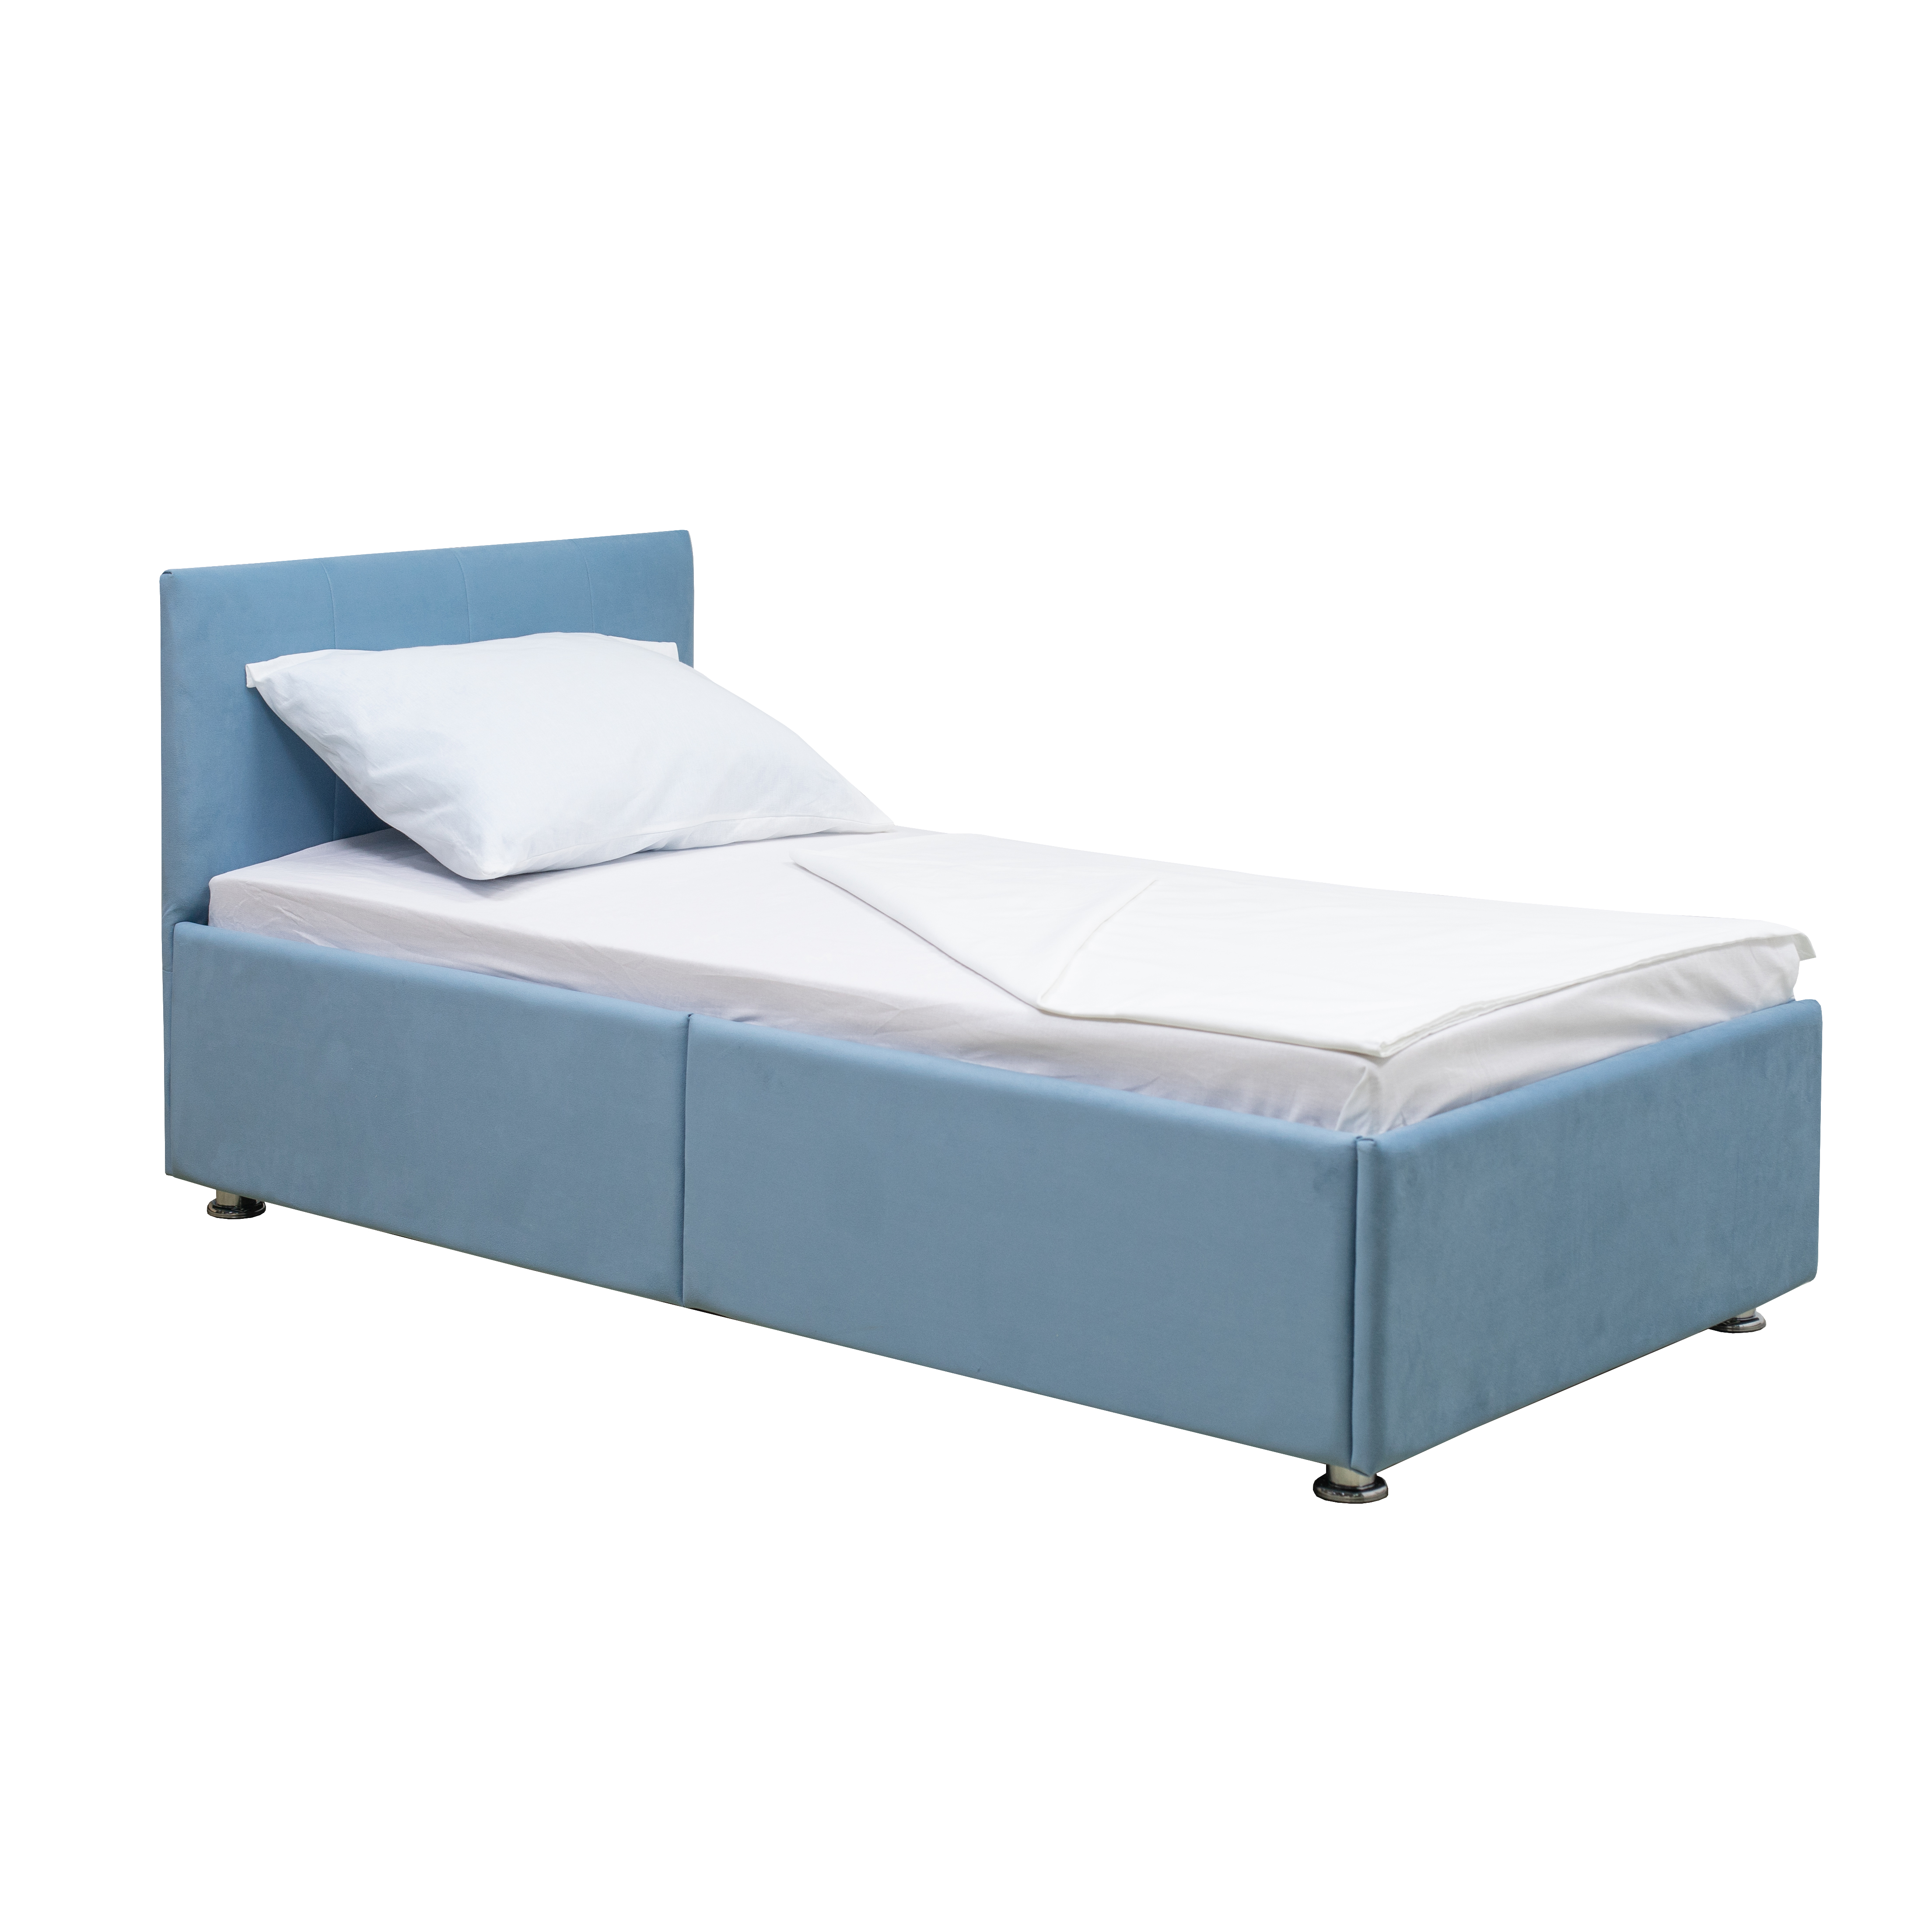 Кровать детская М-СТИЛЬ Умка на ортопедическом основании, голубой, 160х80 см